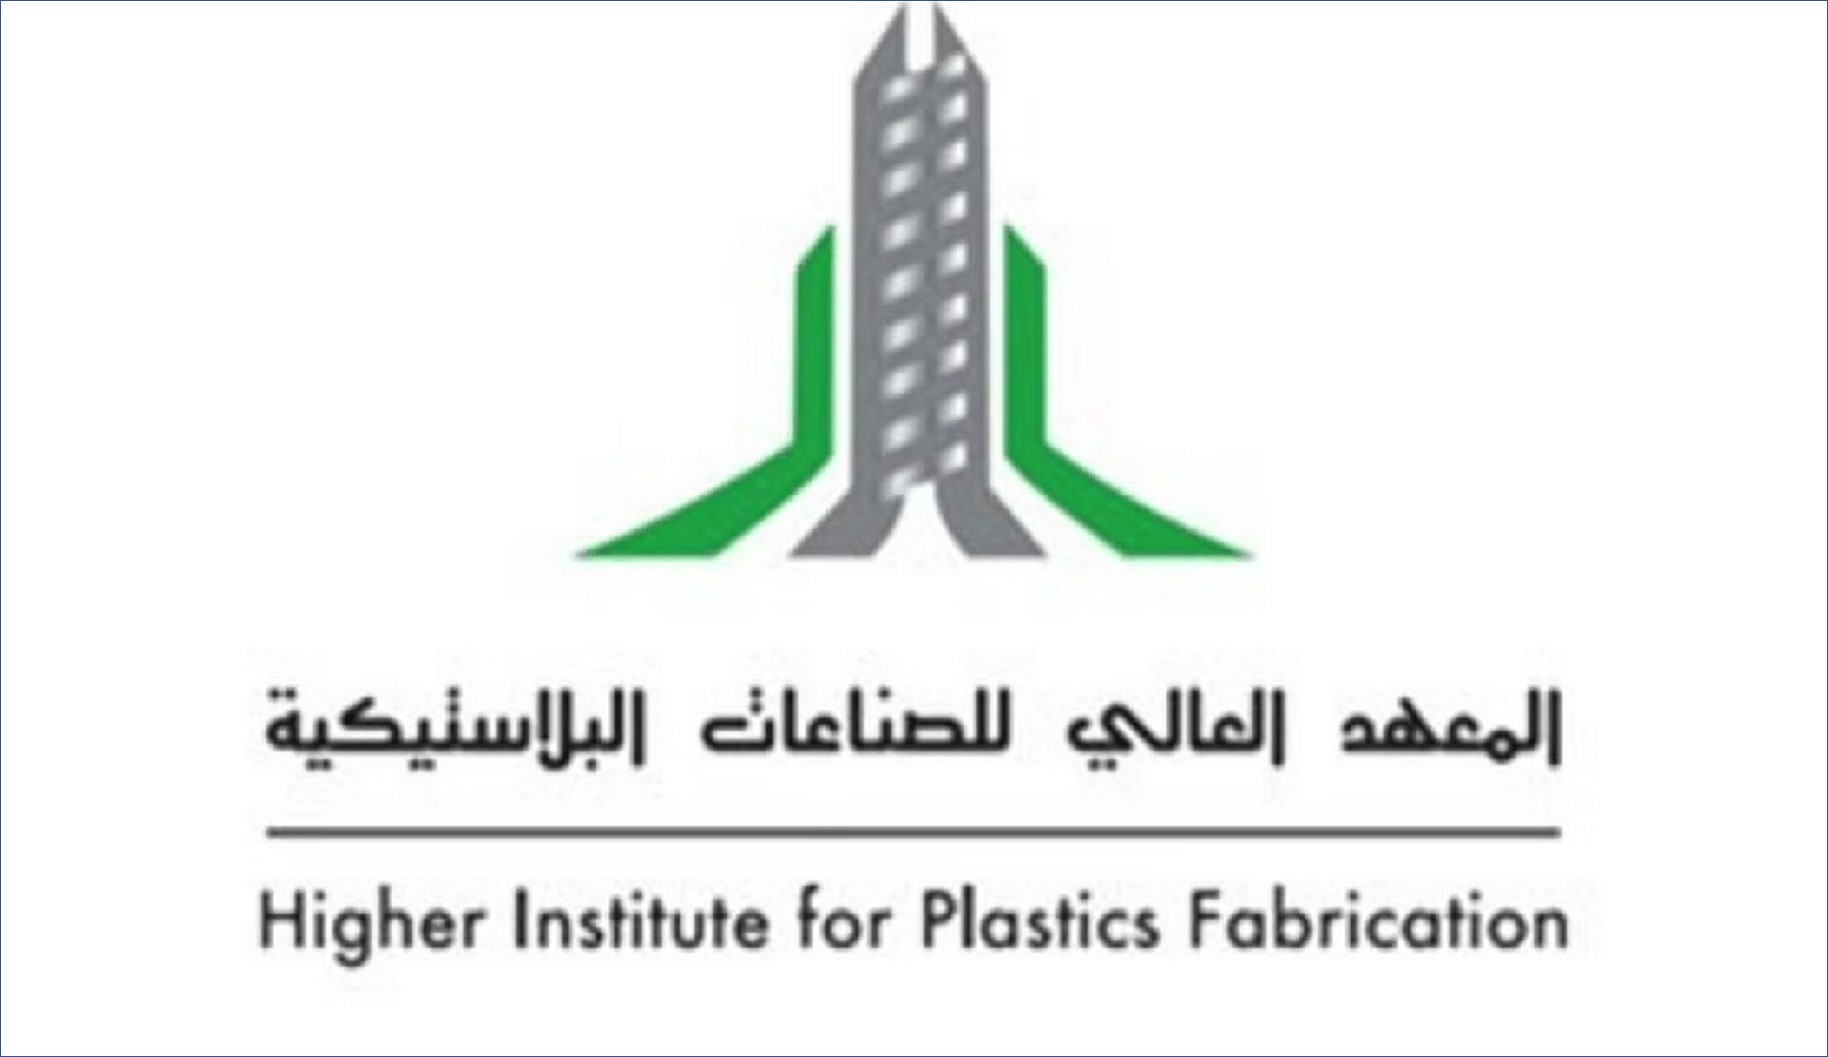 المعهد العالي للصناعات البلاستيكية يعلن عن برنامج مبتدئ بالتوظيف